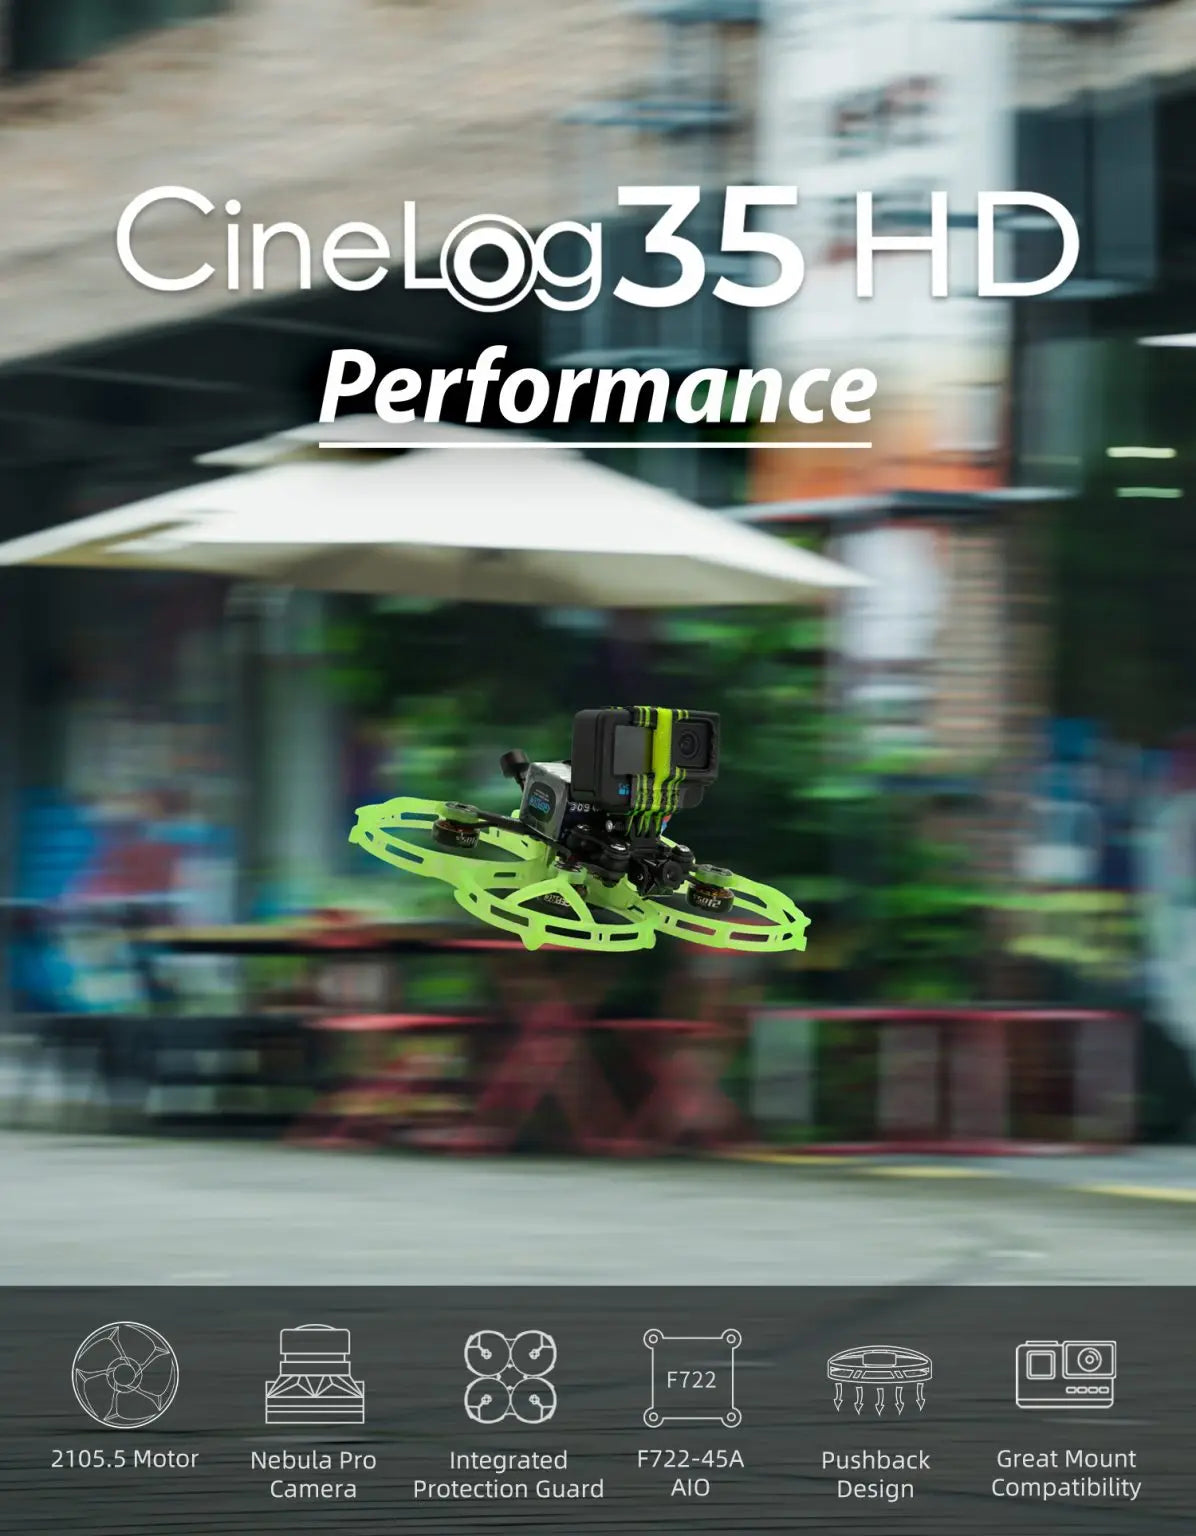 GEPRC CineLog35 Cinewhoop FPV Drone, Cinelog35 HD Performance Jc9 2 F722 CooO 2105.5 Motor